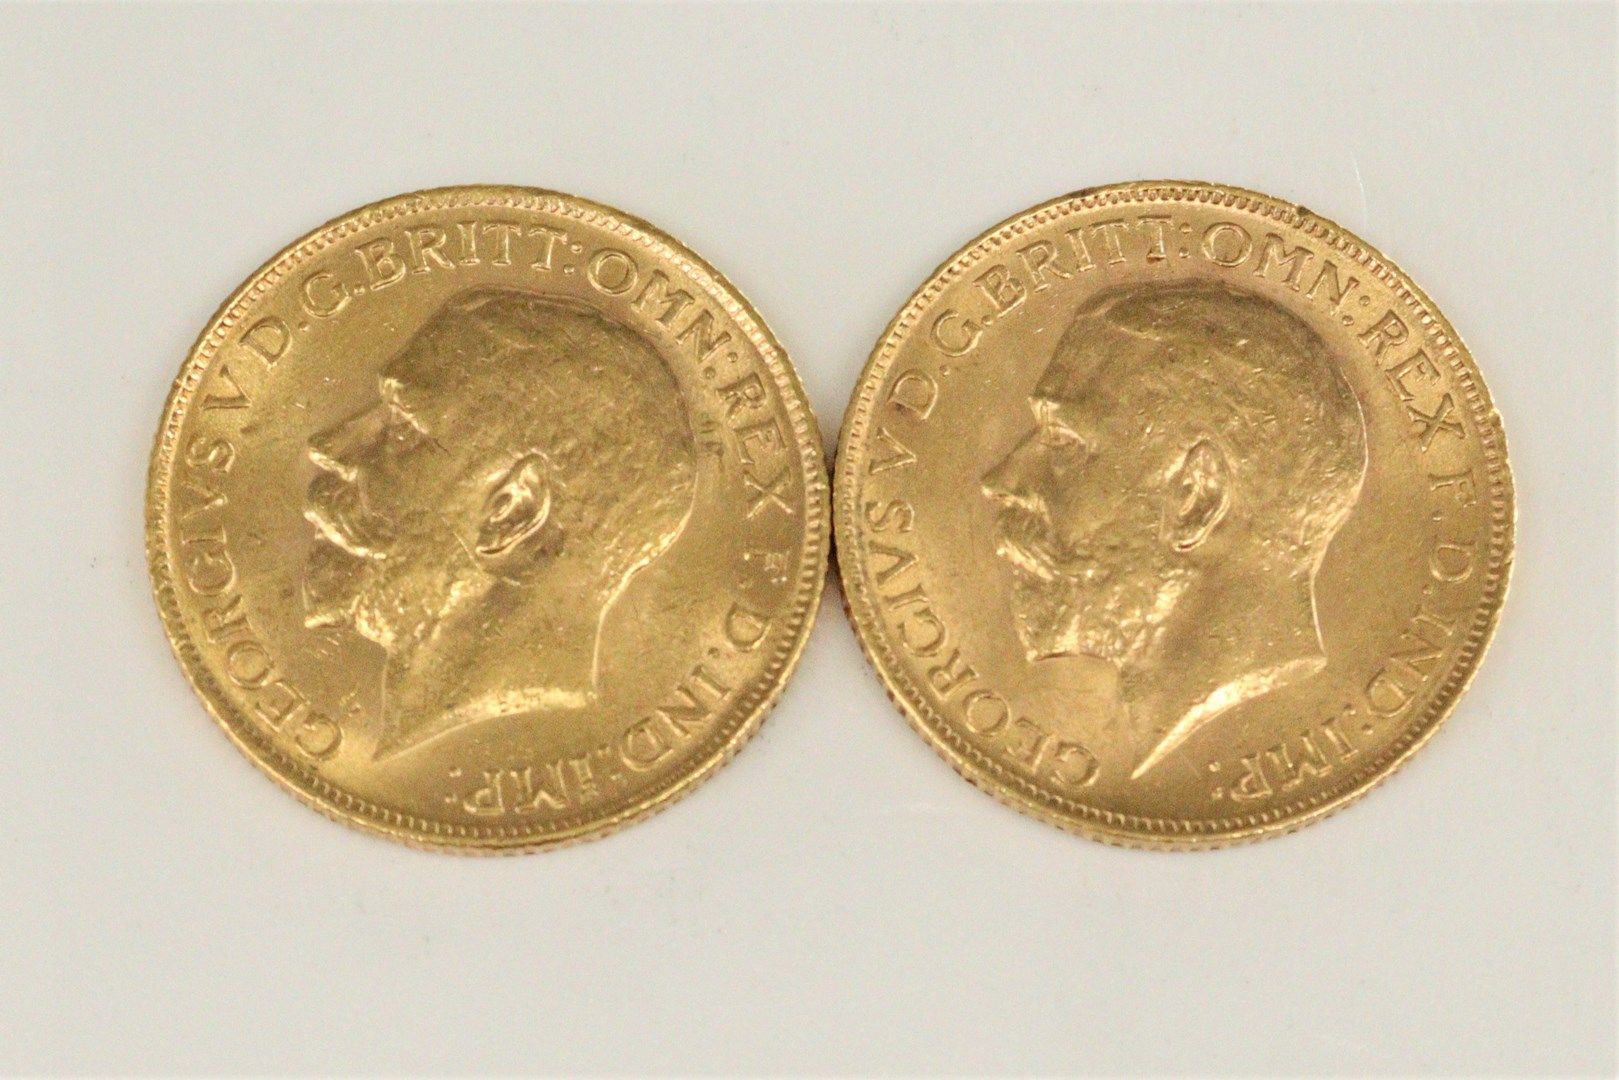 Null Lote de dos soberanos de oro de 20 francos Geroges V. (1911 y 1912)

TTB a &hellip;